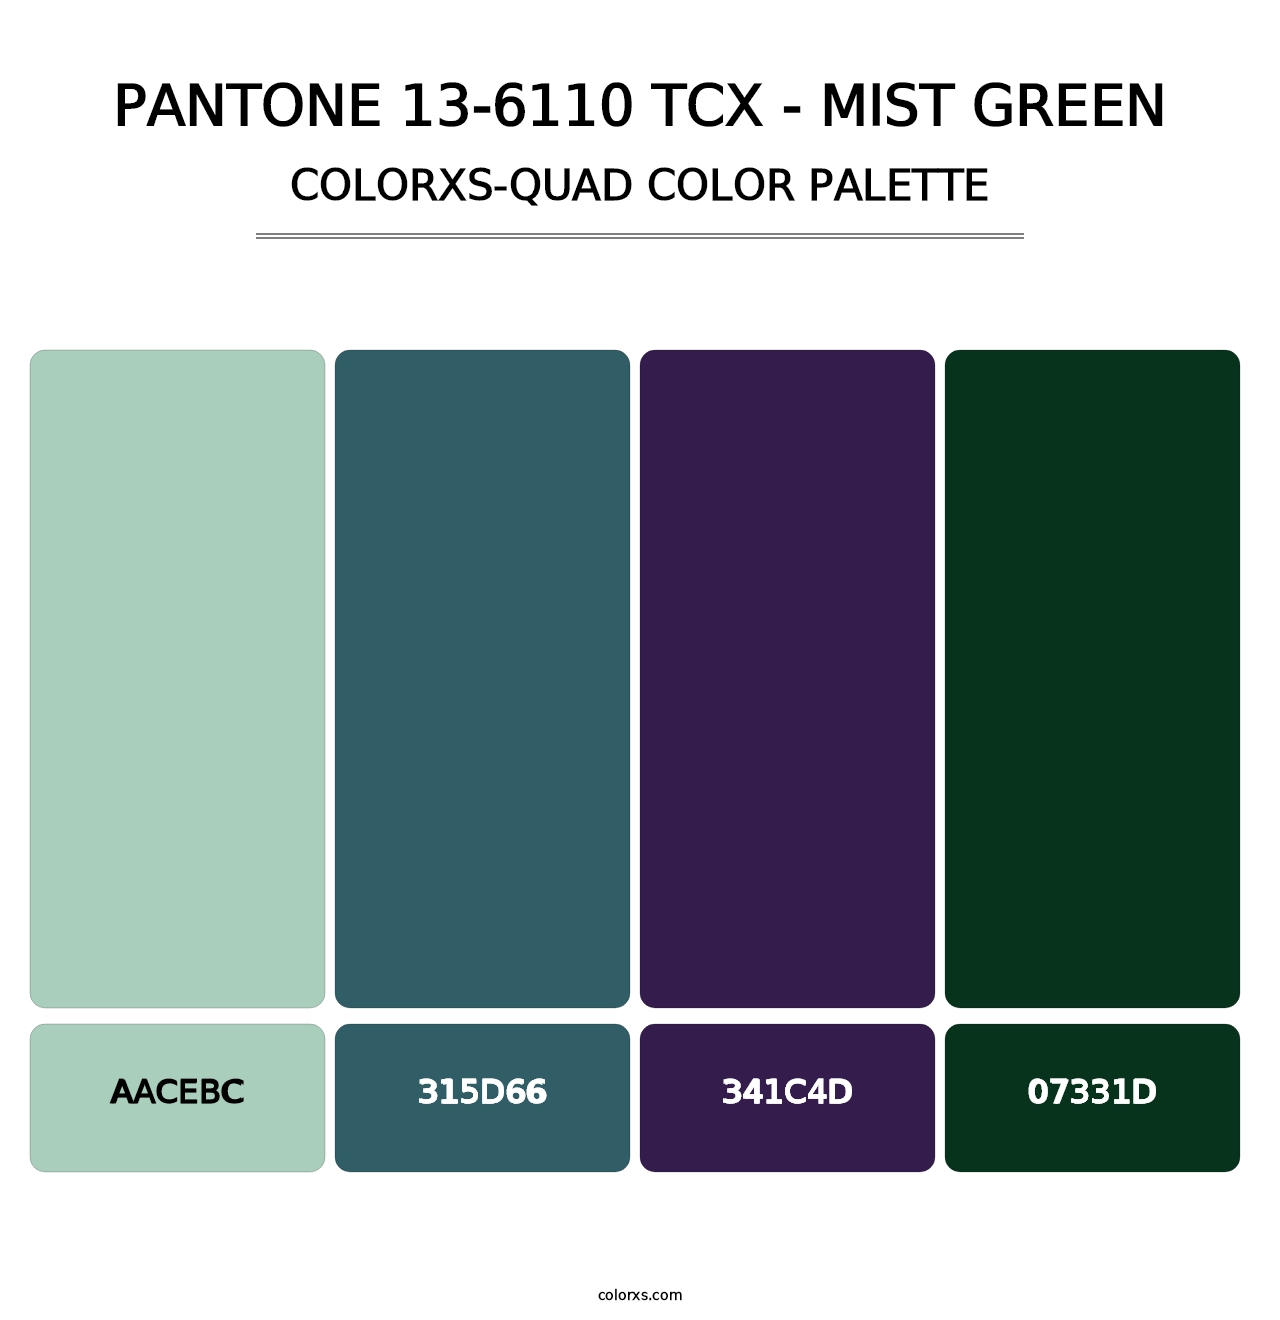 PANTONE 13-6110 TCX - Mist Green - Colorxs Quad Palette